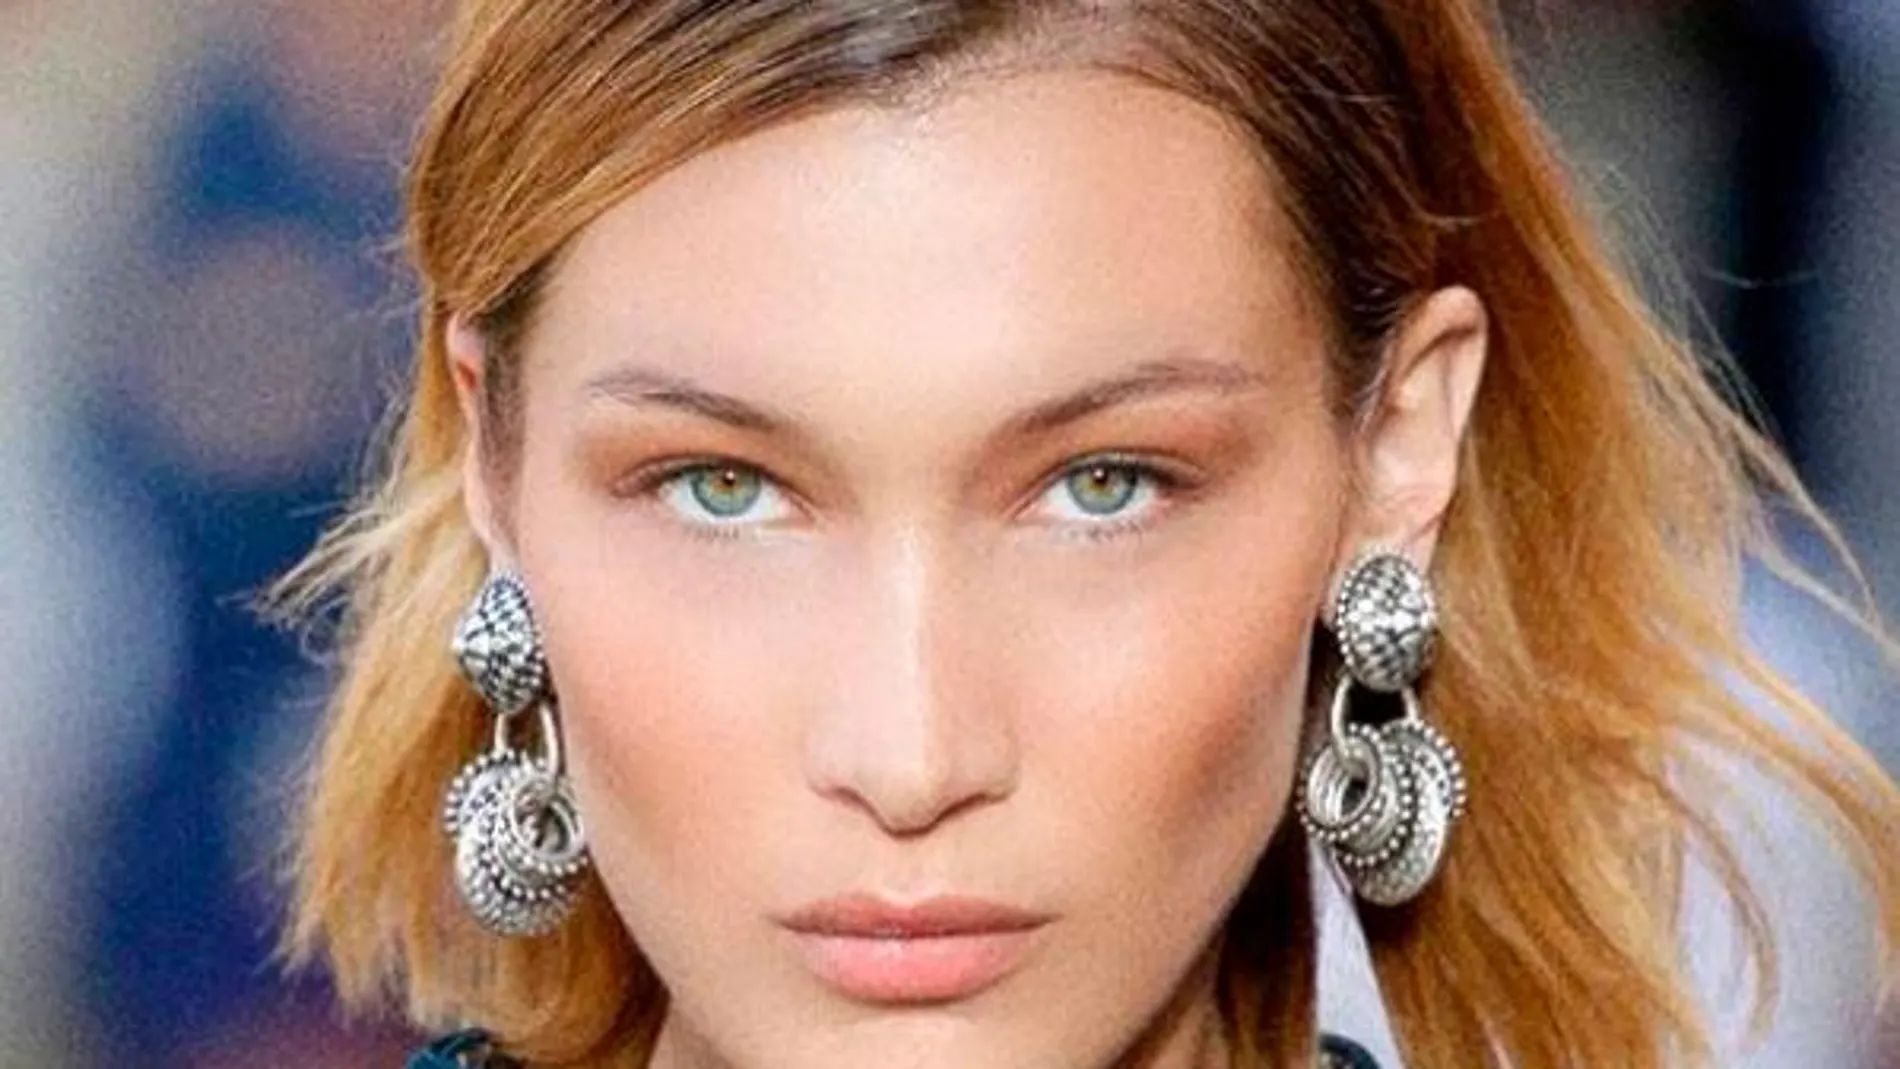 La modelo Bella Hadid es uno de los referentes de belleza en el mundo, se dice que tiene el "rostro perfecto".